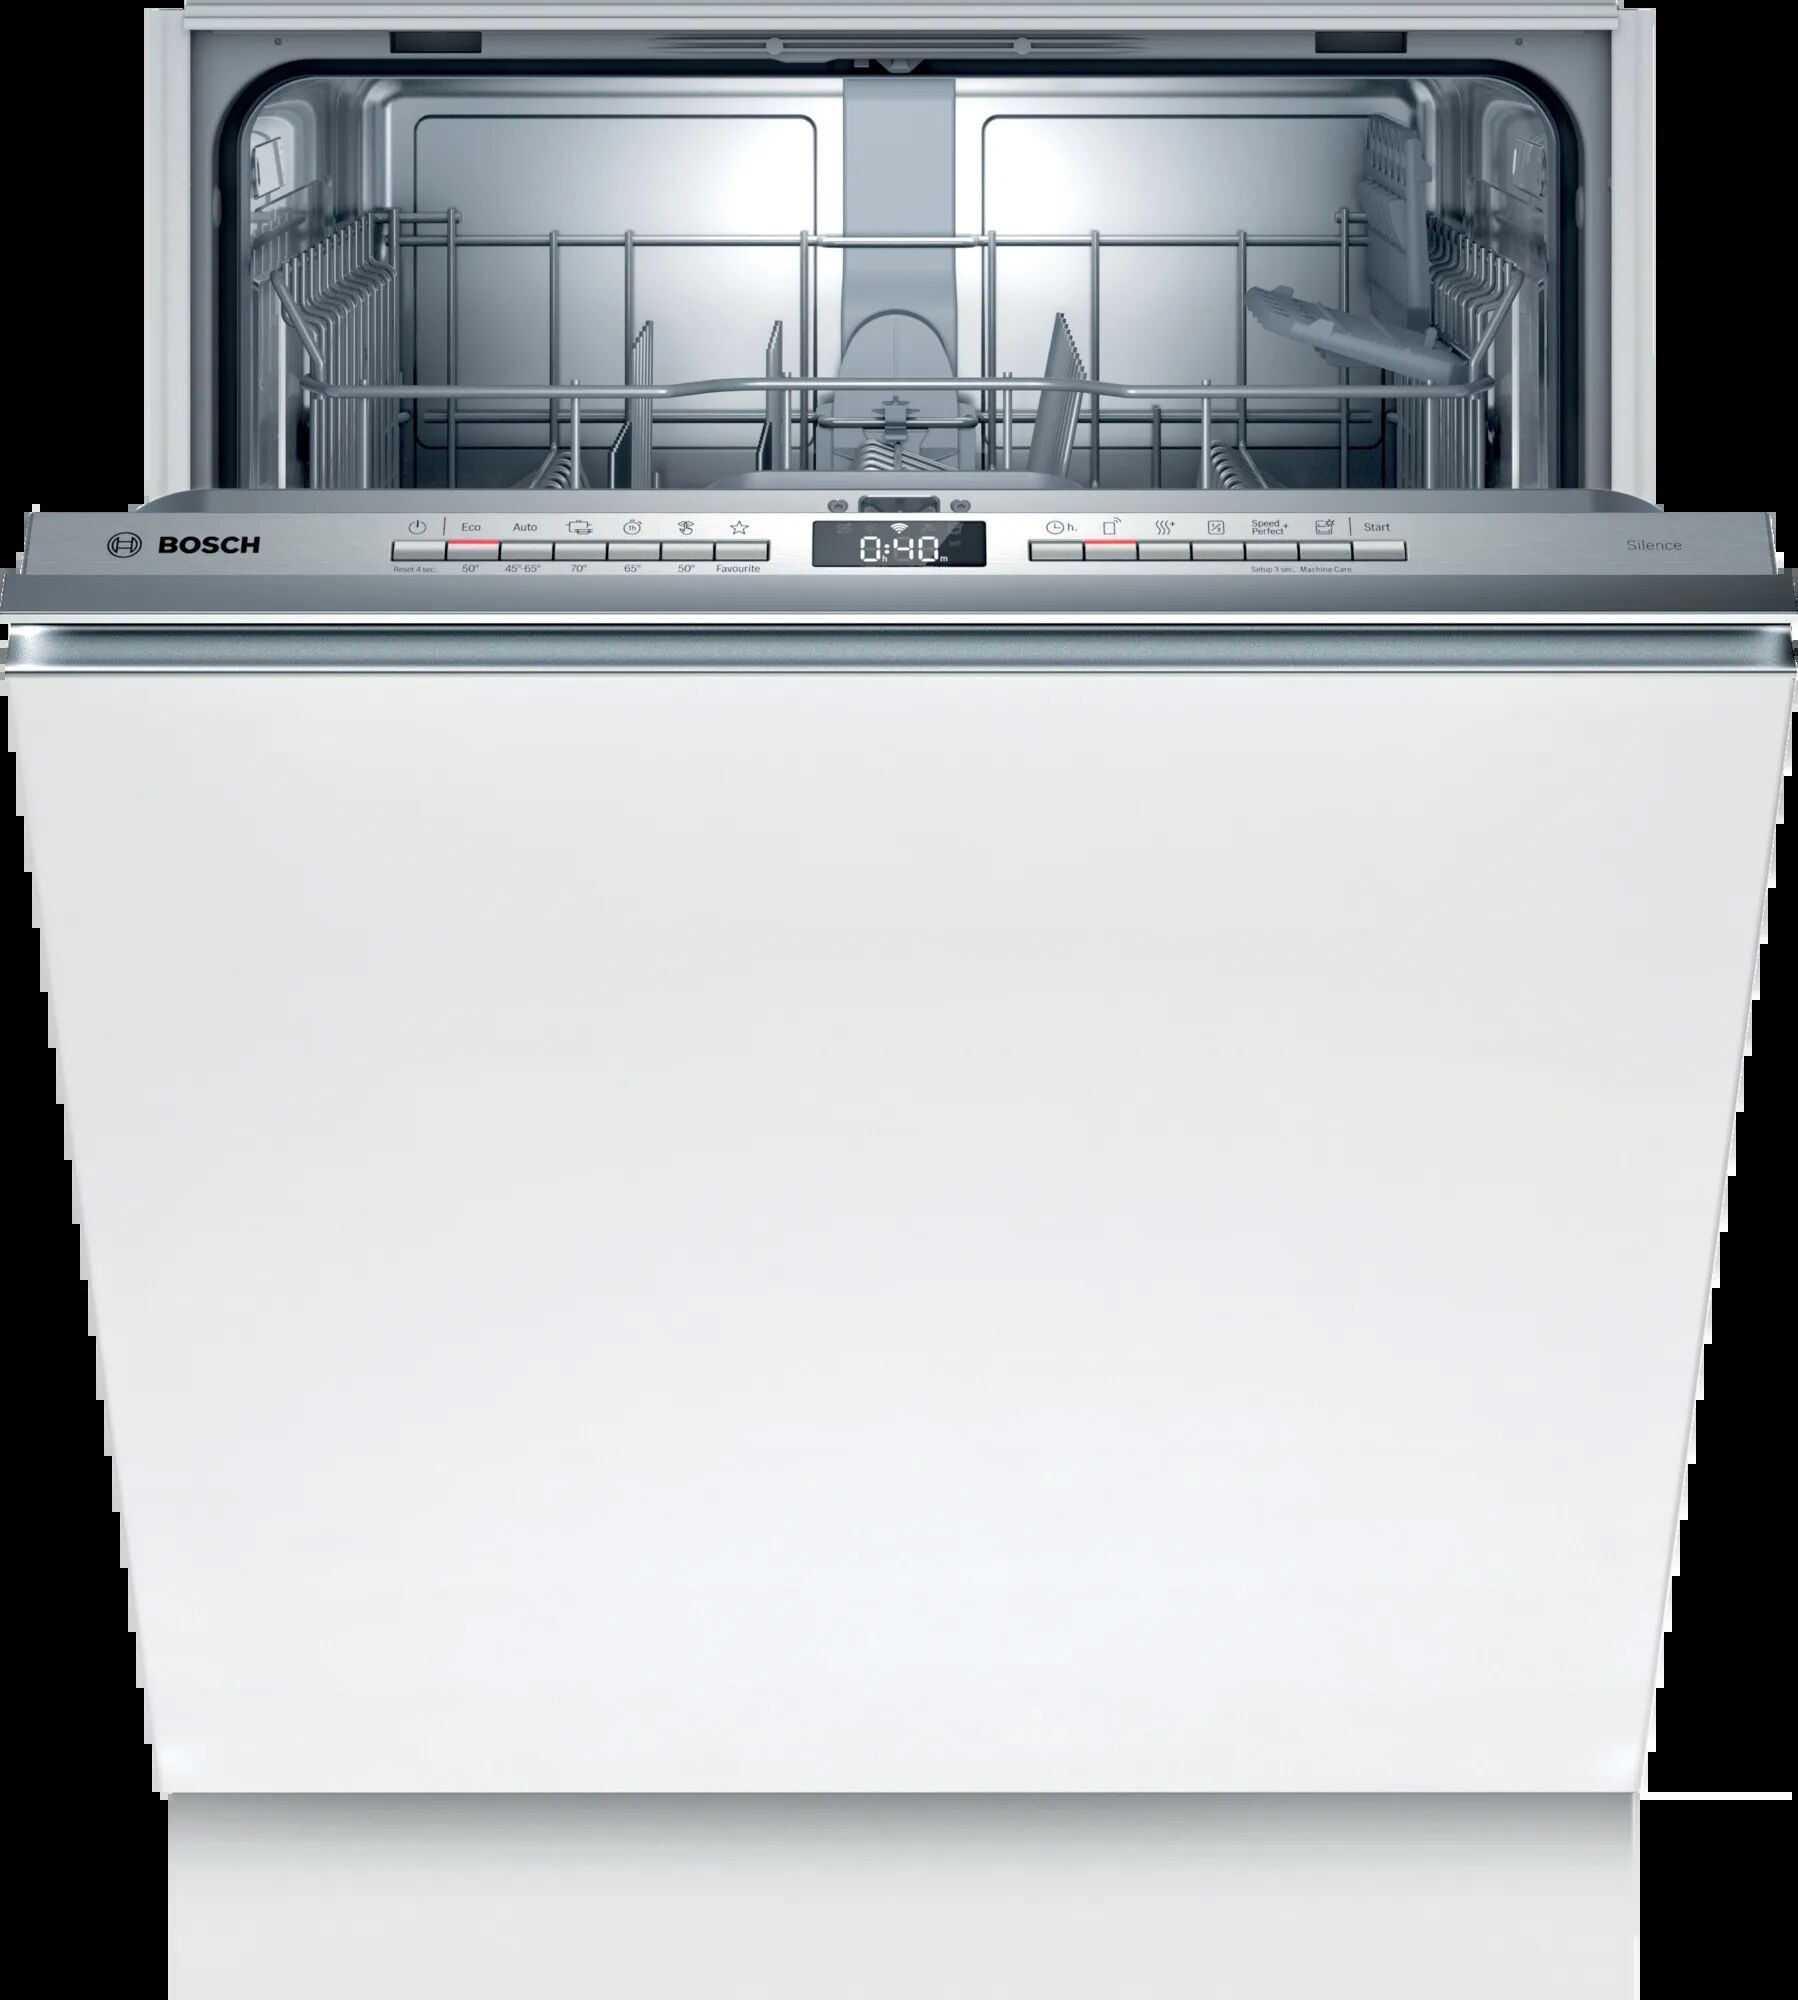 Встраиваемая посудомоечная машина Bosch smv4hvx31e. Bosch посудомоечная машина sgv4hmx1fr. Встраиваемая посудомоечная машина Electrolux ees848200l розетка с зади. Реклама посудомоечной машины Bosch. Встроенные посудомойки бош 60 см